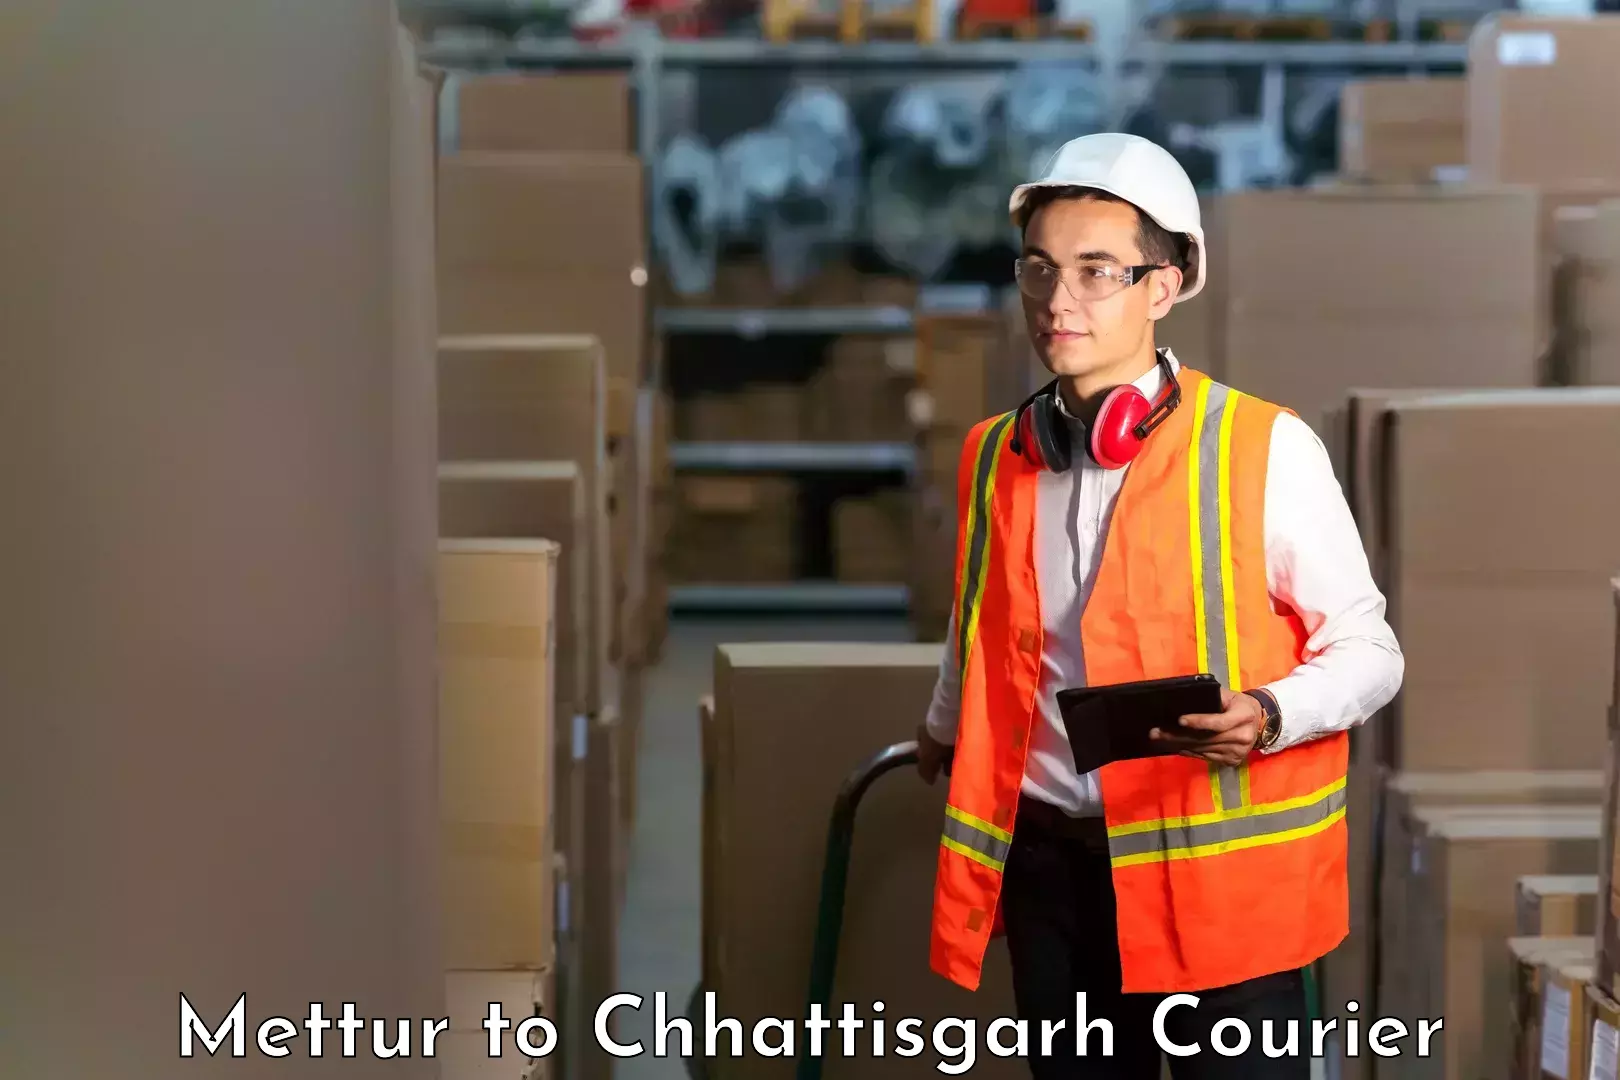 User-friendly delivery service Mettur to Korea Chhattisgarh